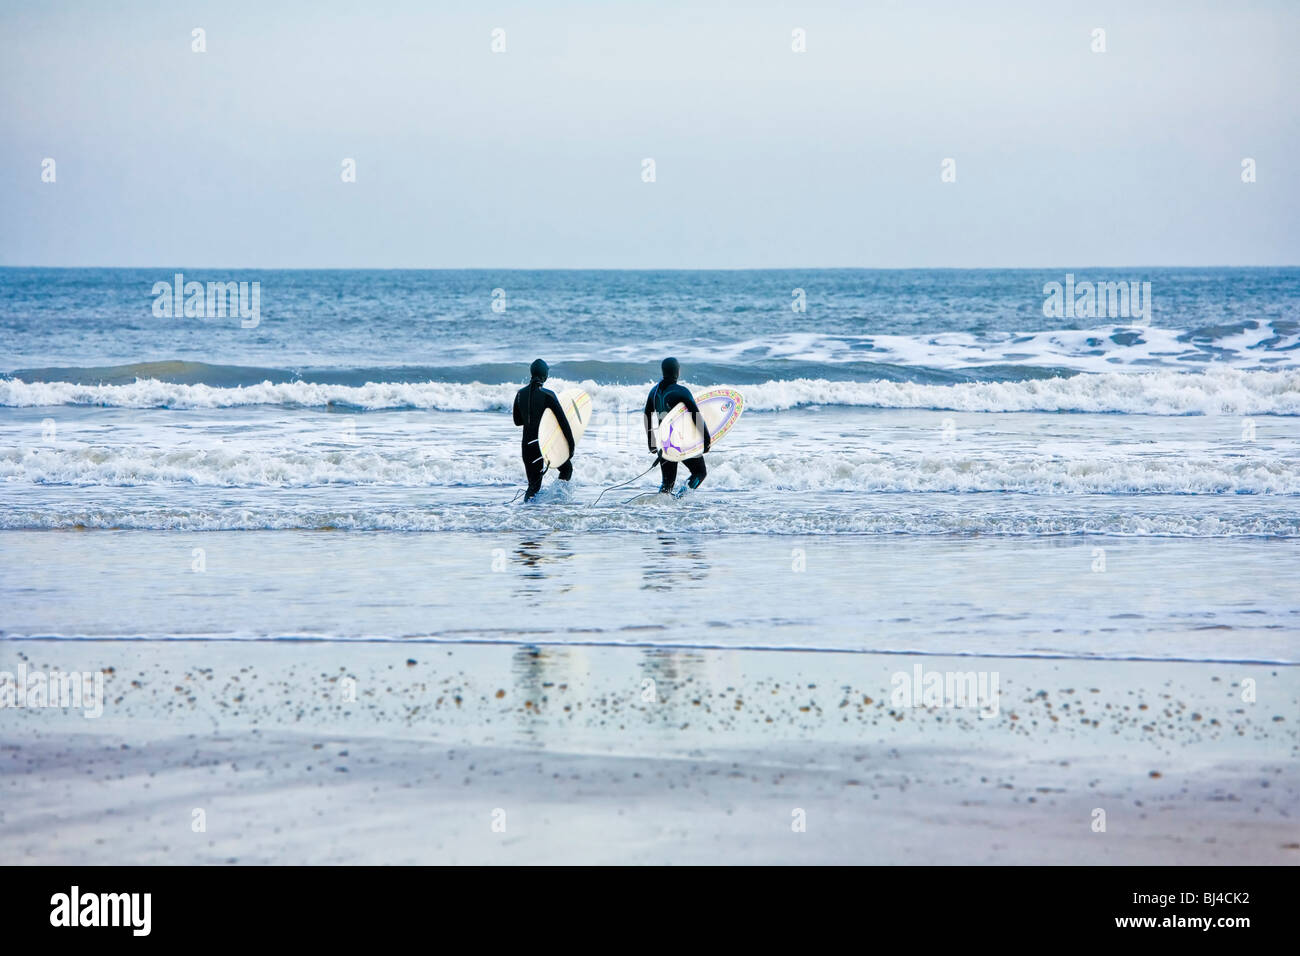 Surfers, England UK Stock Photo